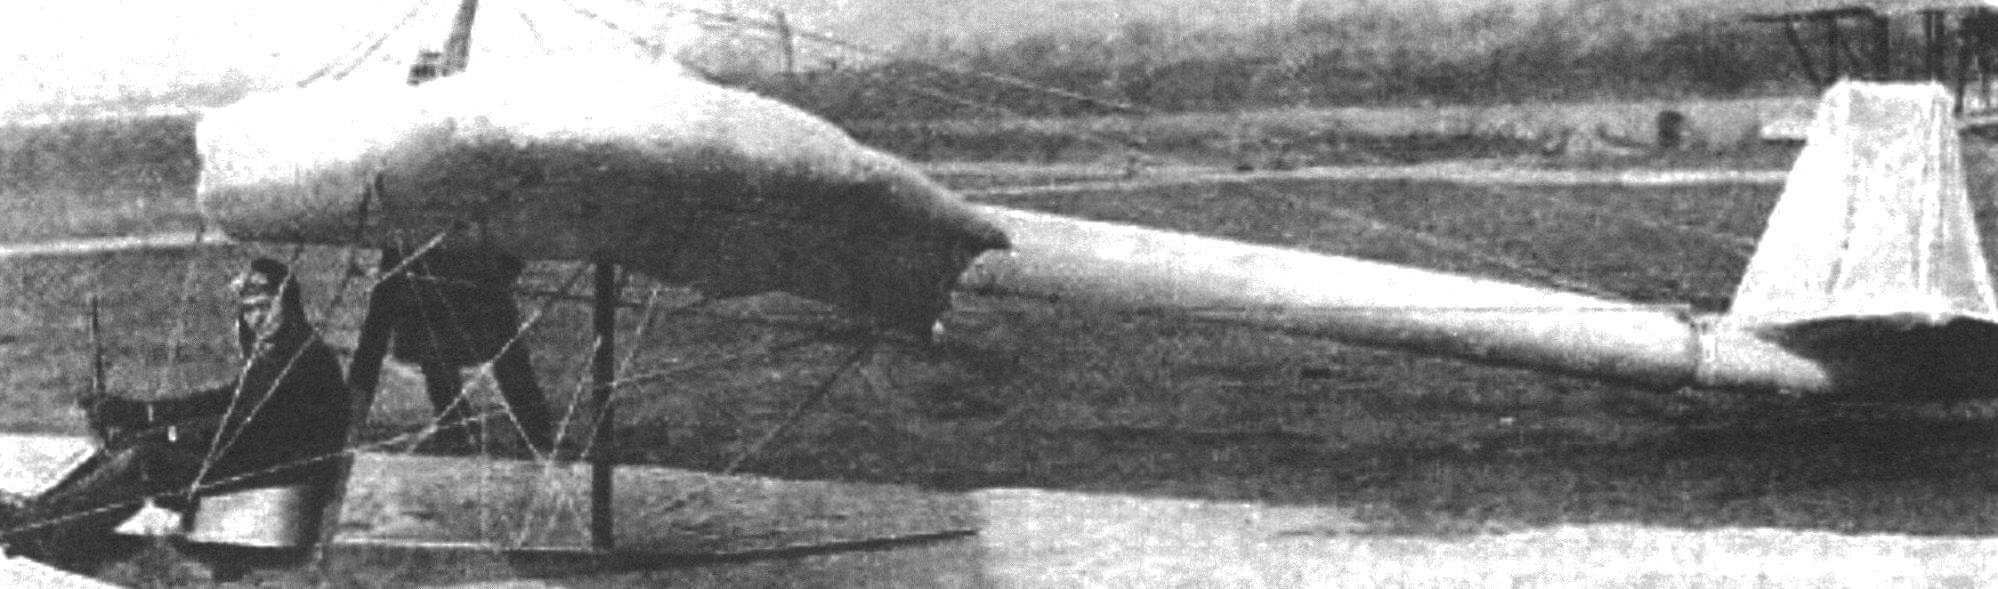 1931 год. Испытания надувного планера Тэйлора Макдэниэла